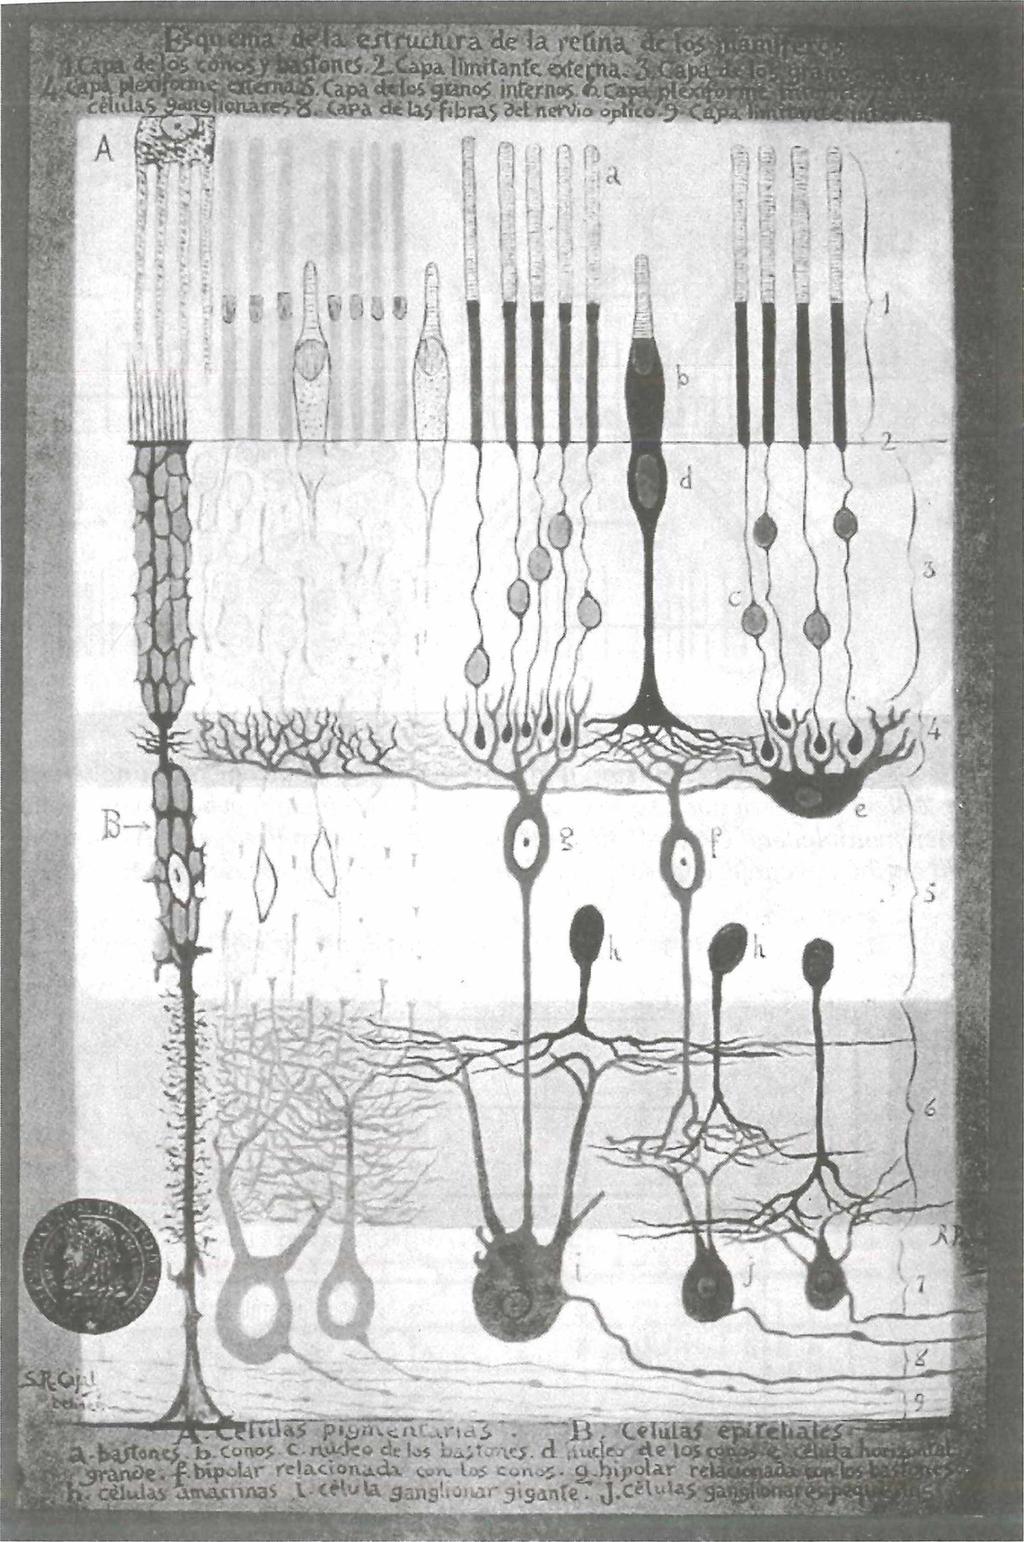 Abb. 7: Schichtenaufbau der Retina nach einer Originalzeichnung von Santiago Ramón y Cajal (aus Hu